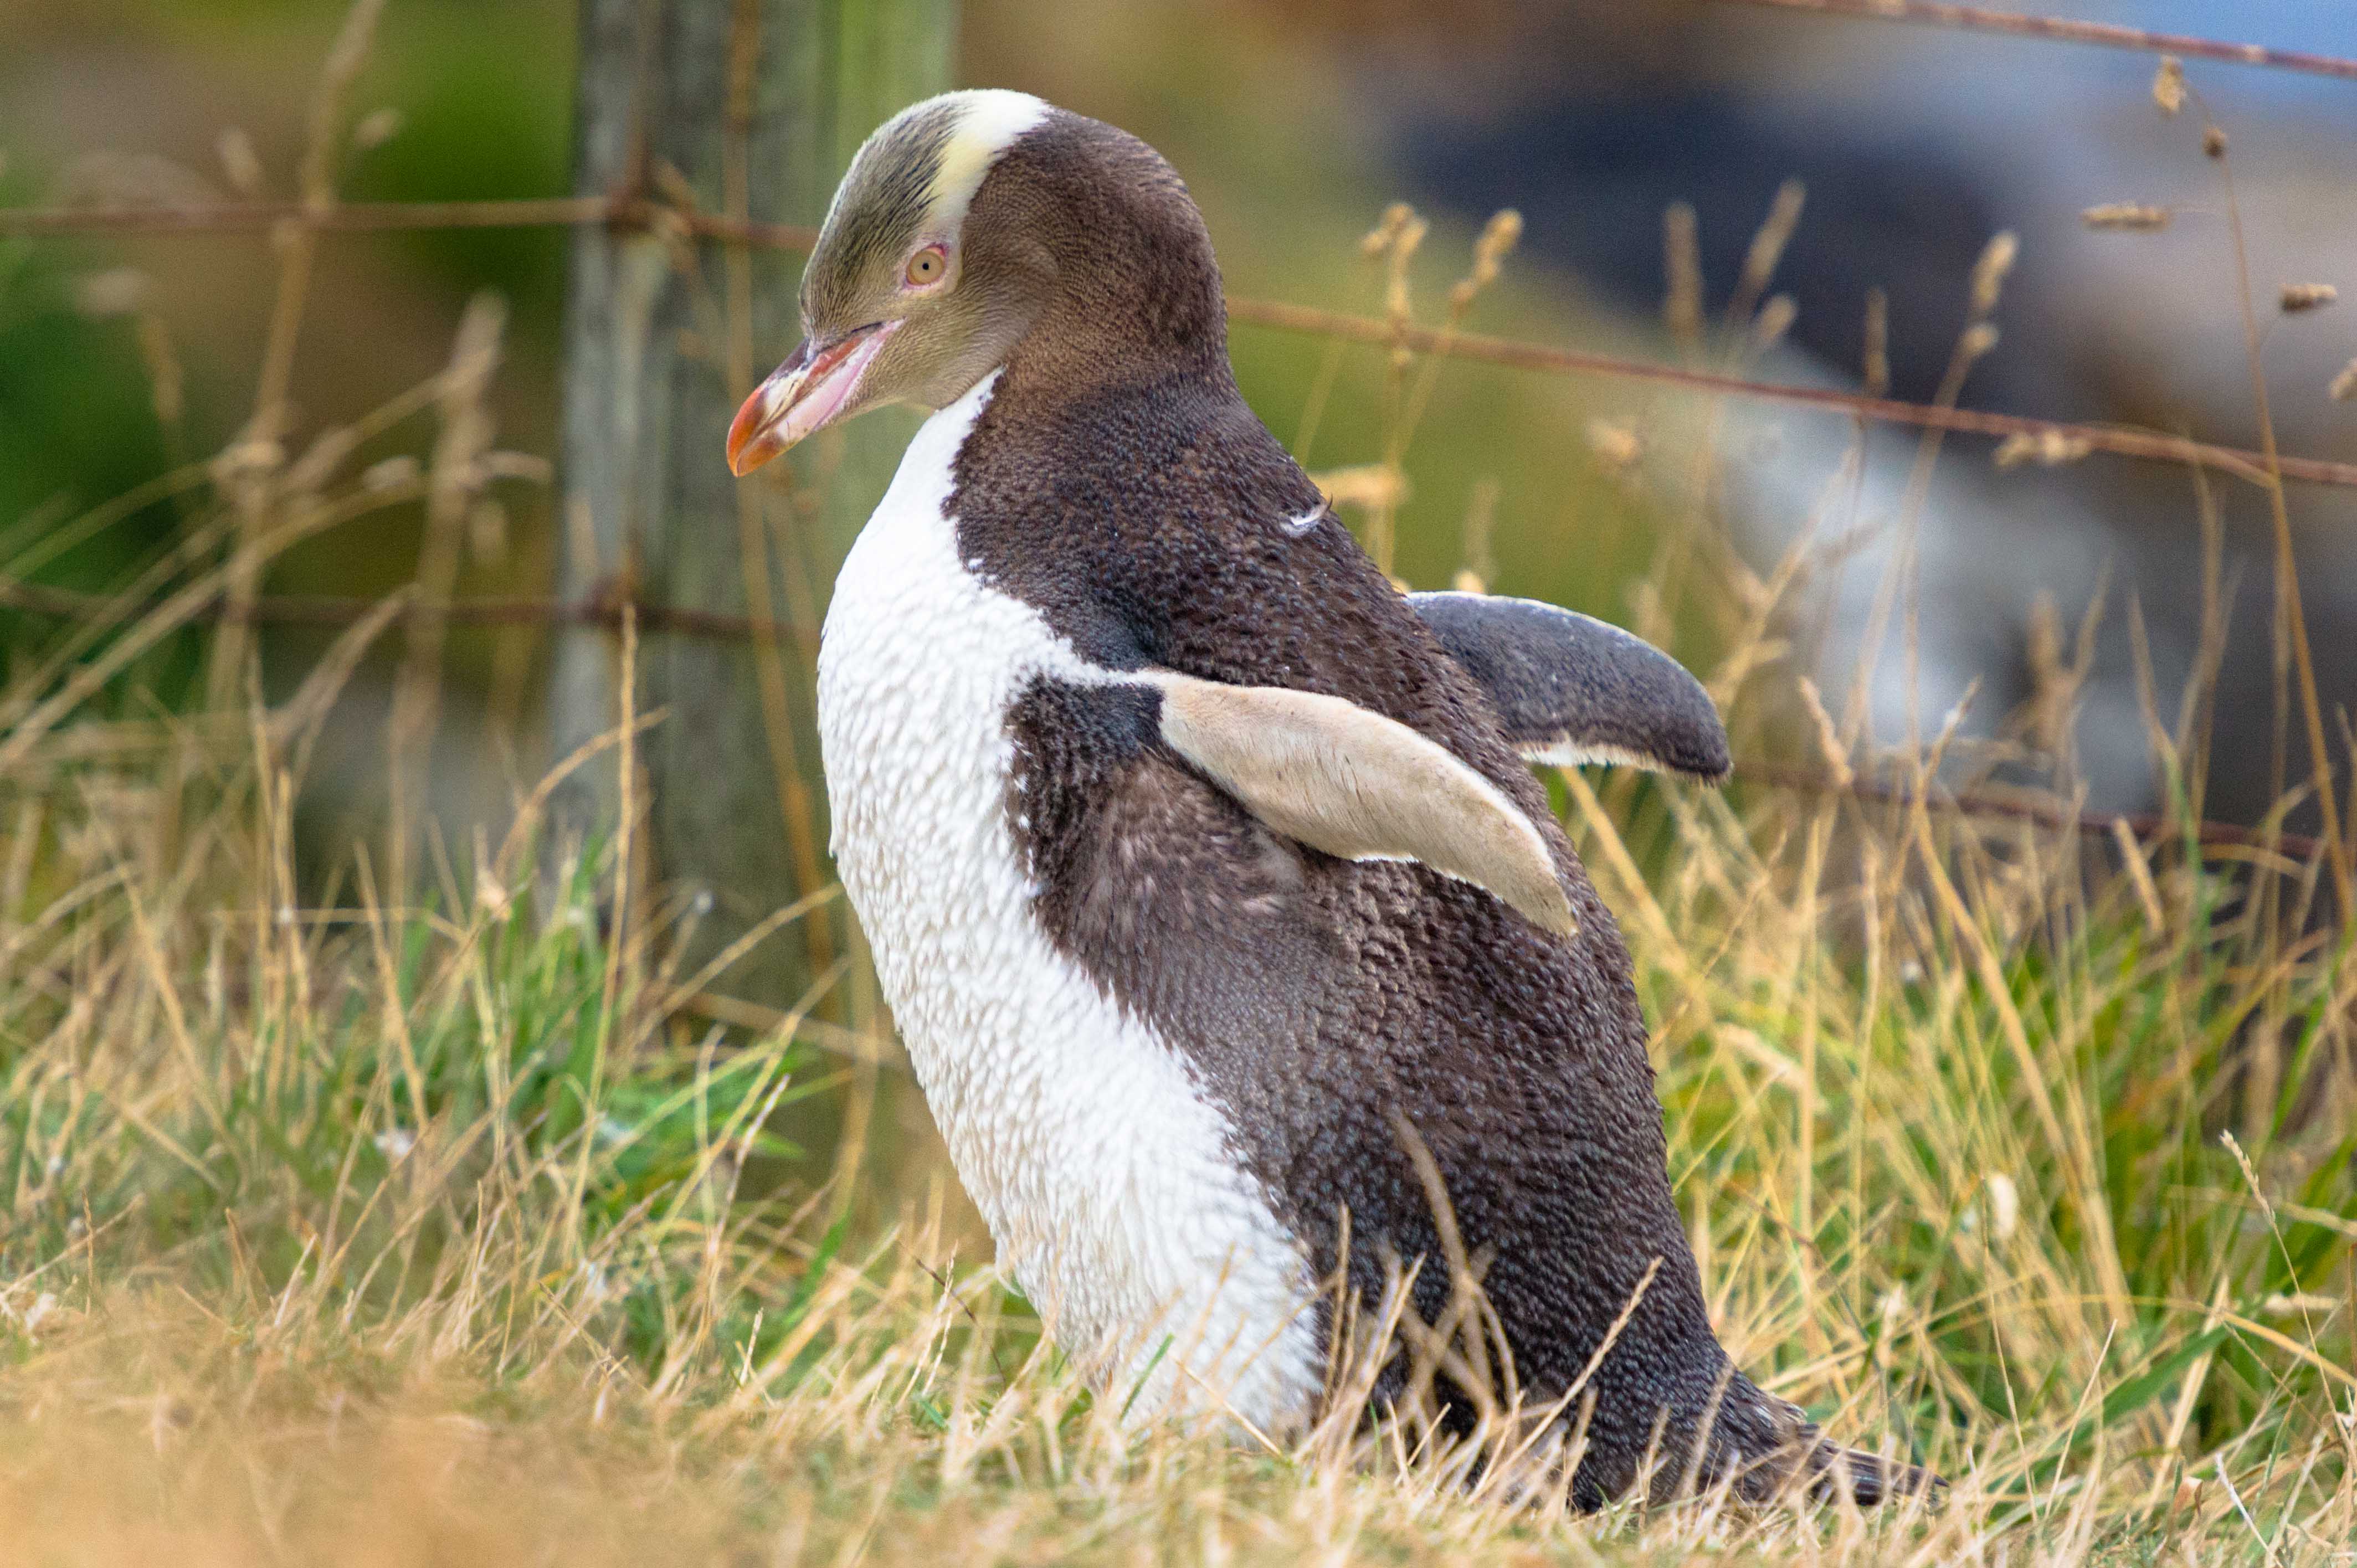 Pinguin in Neuseeland. Bild: Tanja von Reiseaufnahmen